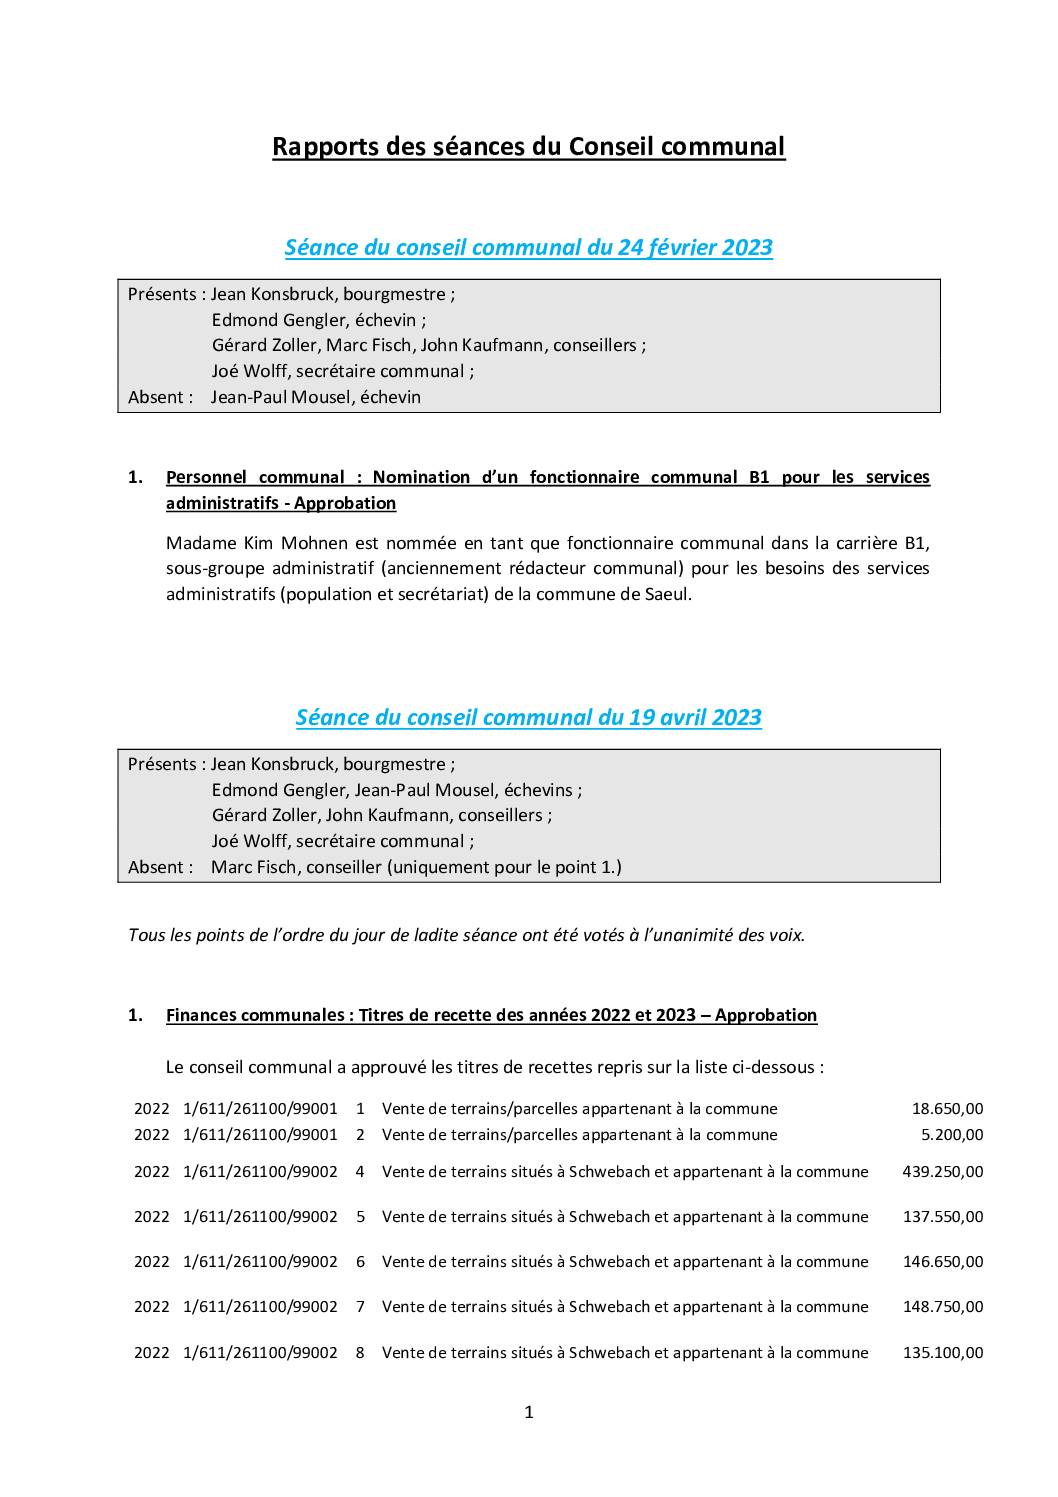 Rapports des séances du conseil communal - Gemengerotsrapporten (24.02.2023 + 19.04.2023)